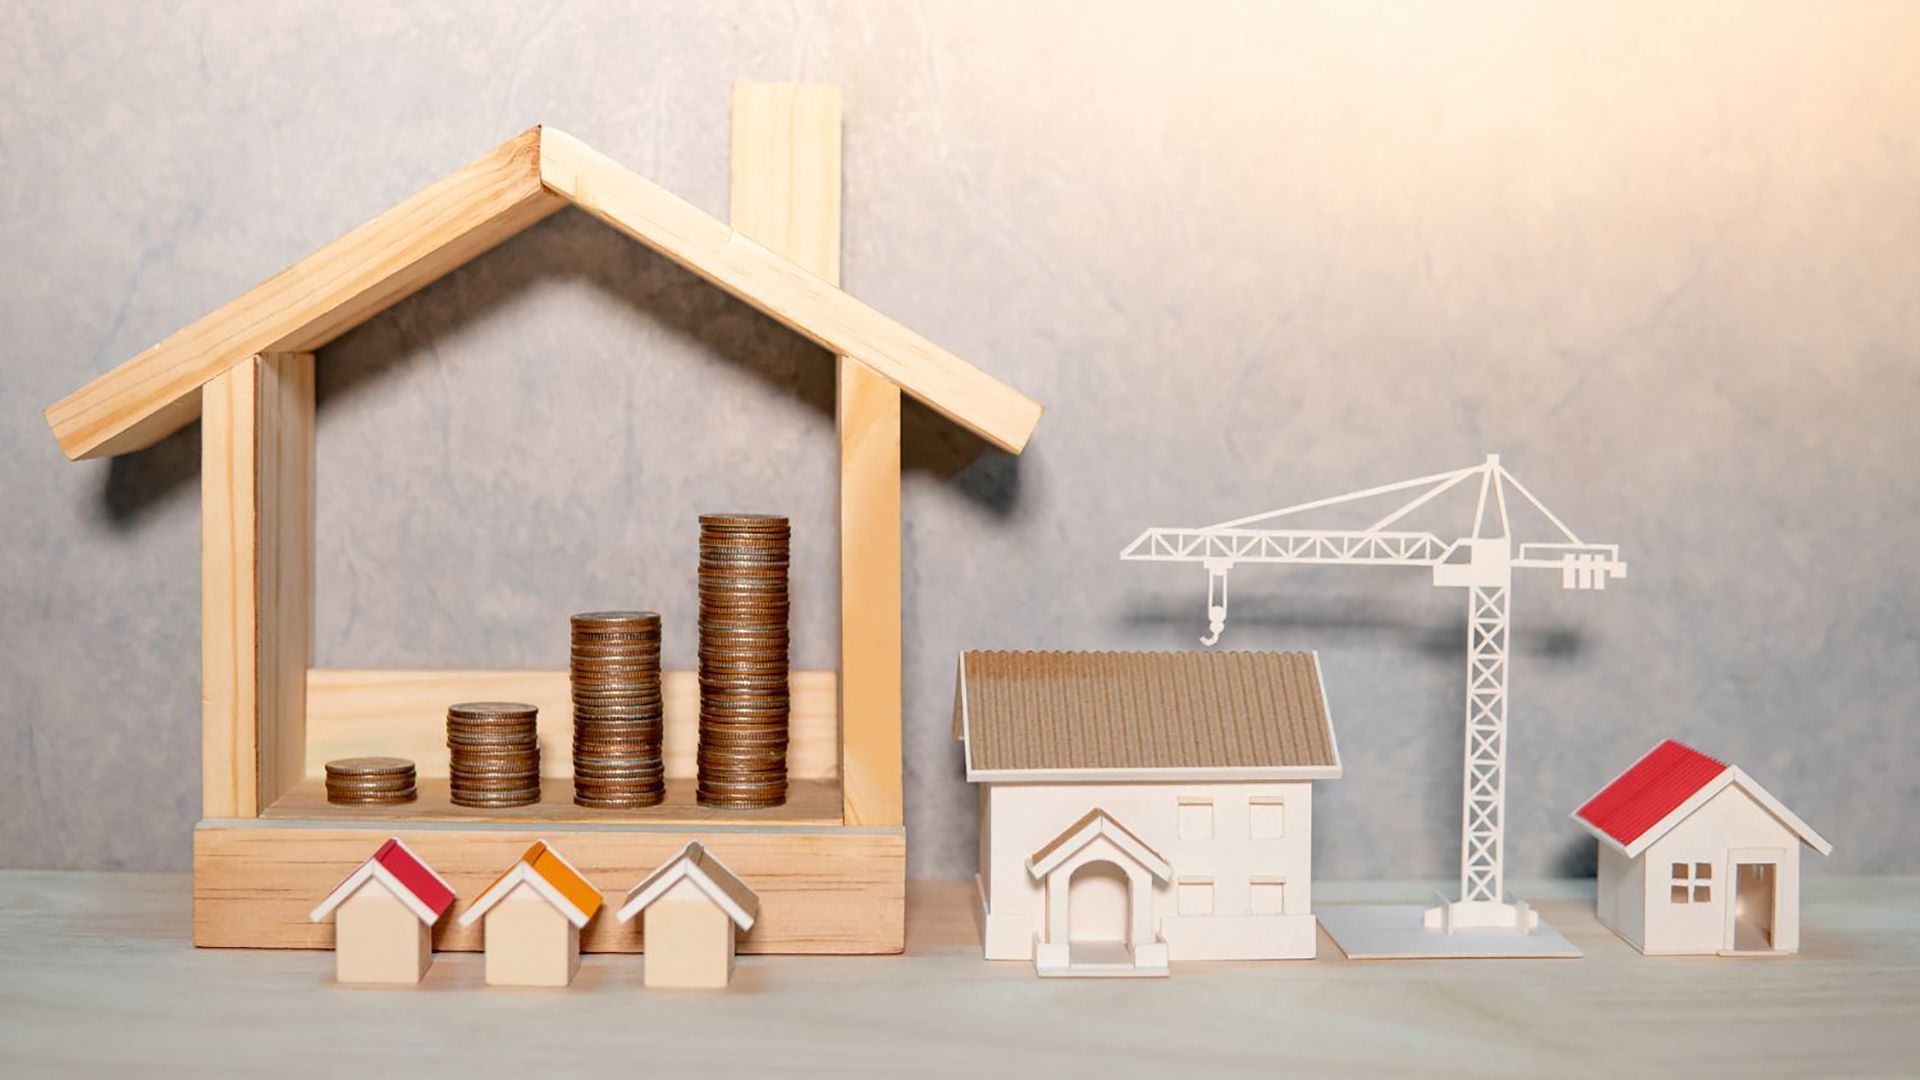  Har nya bostadsrättsföreningar för stora lån?